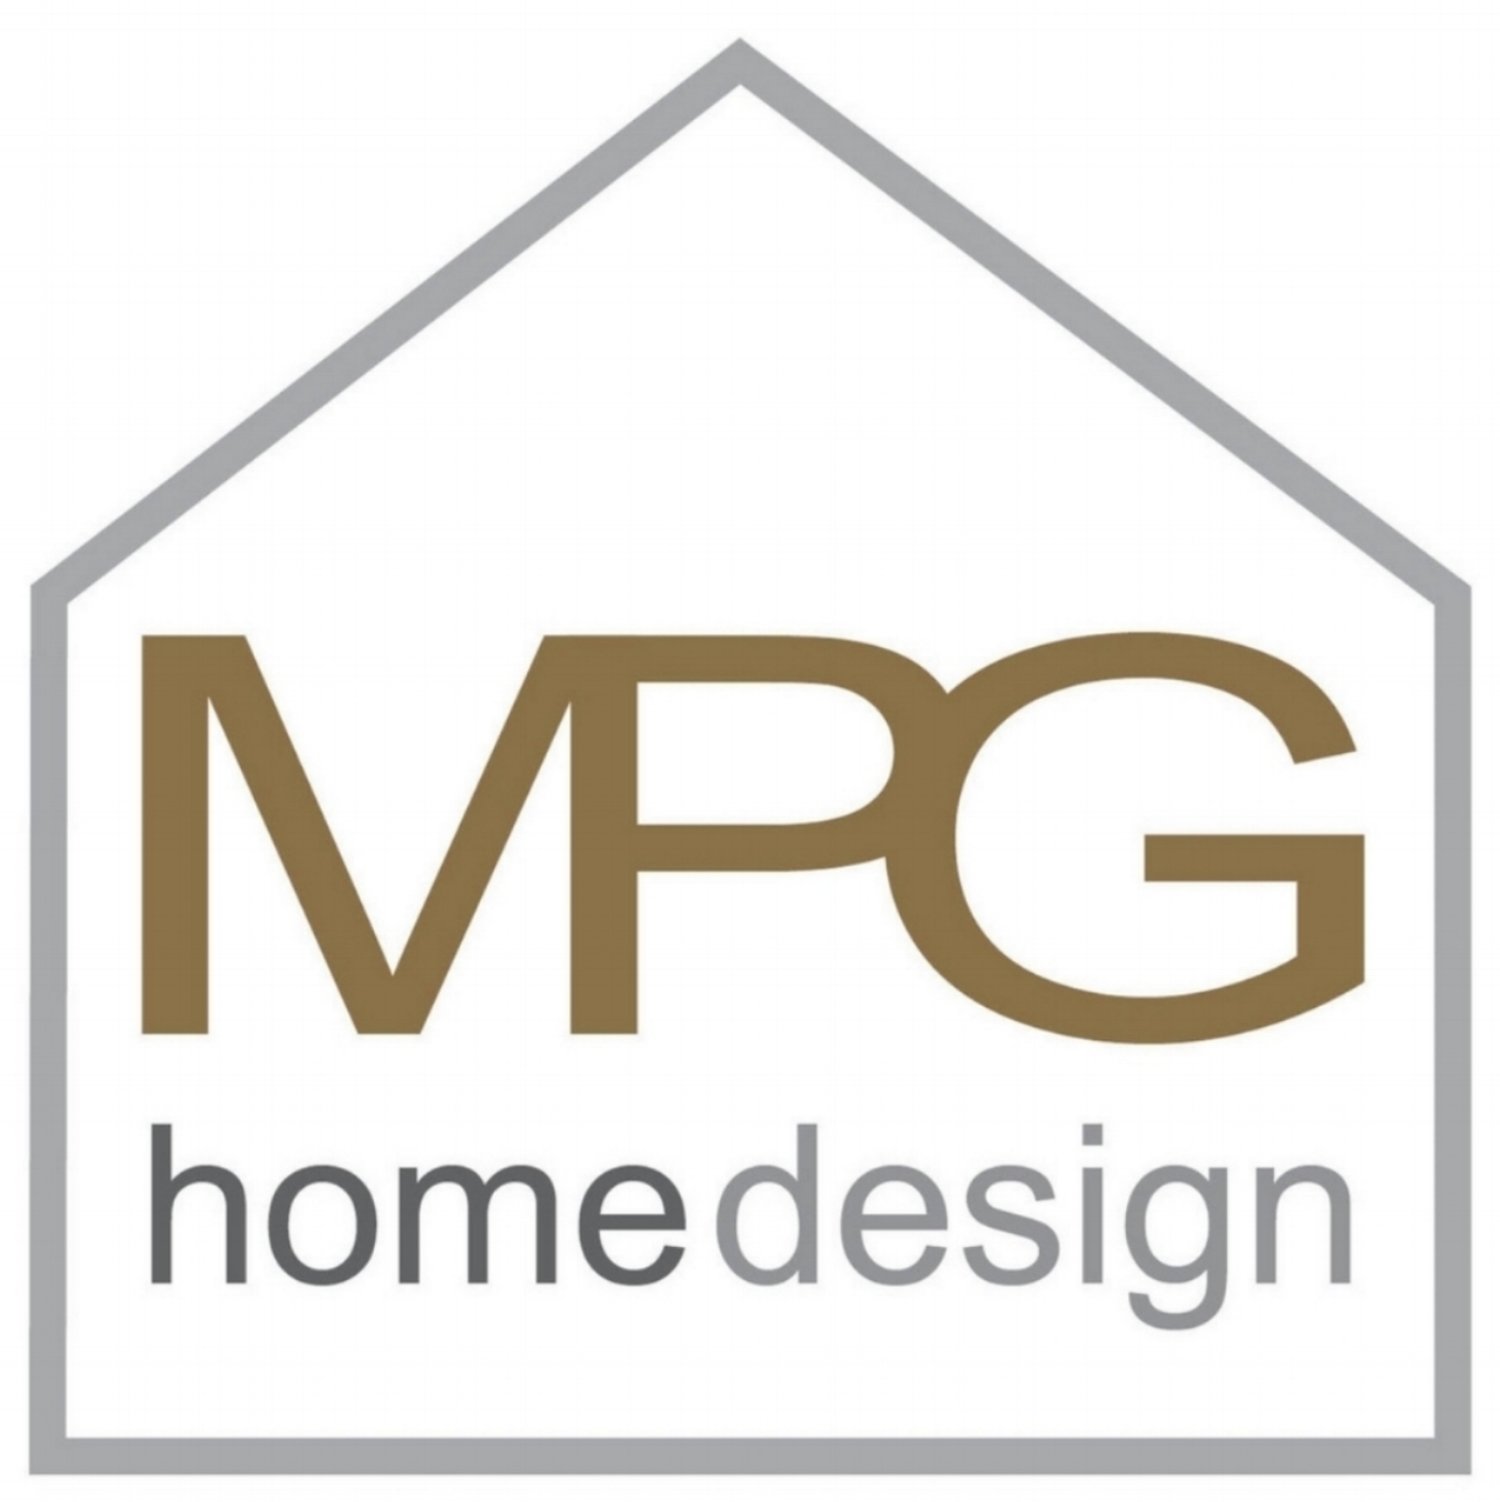 MPG Home Design